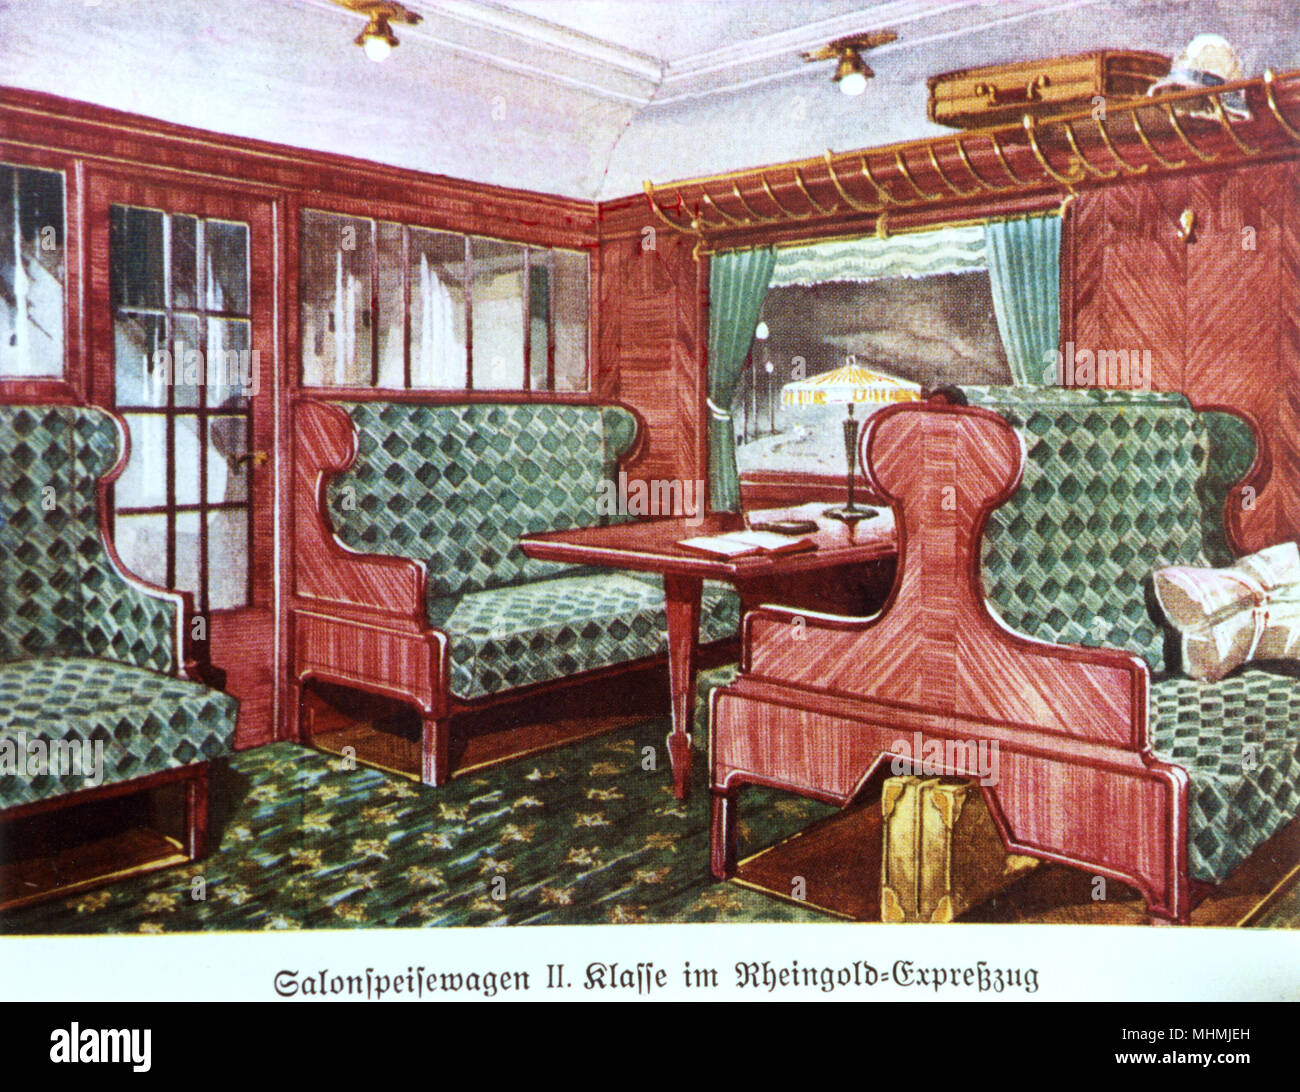 Plush interno del "Rheingold" treno express (seconda classe). Data: 1930s Foto Stock